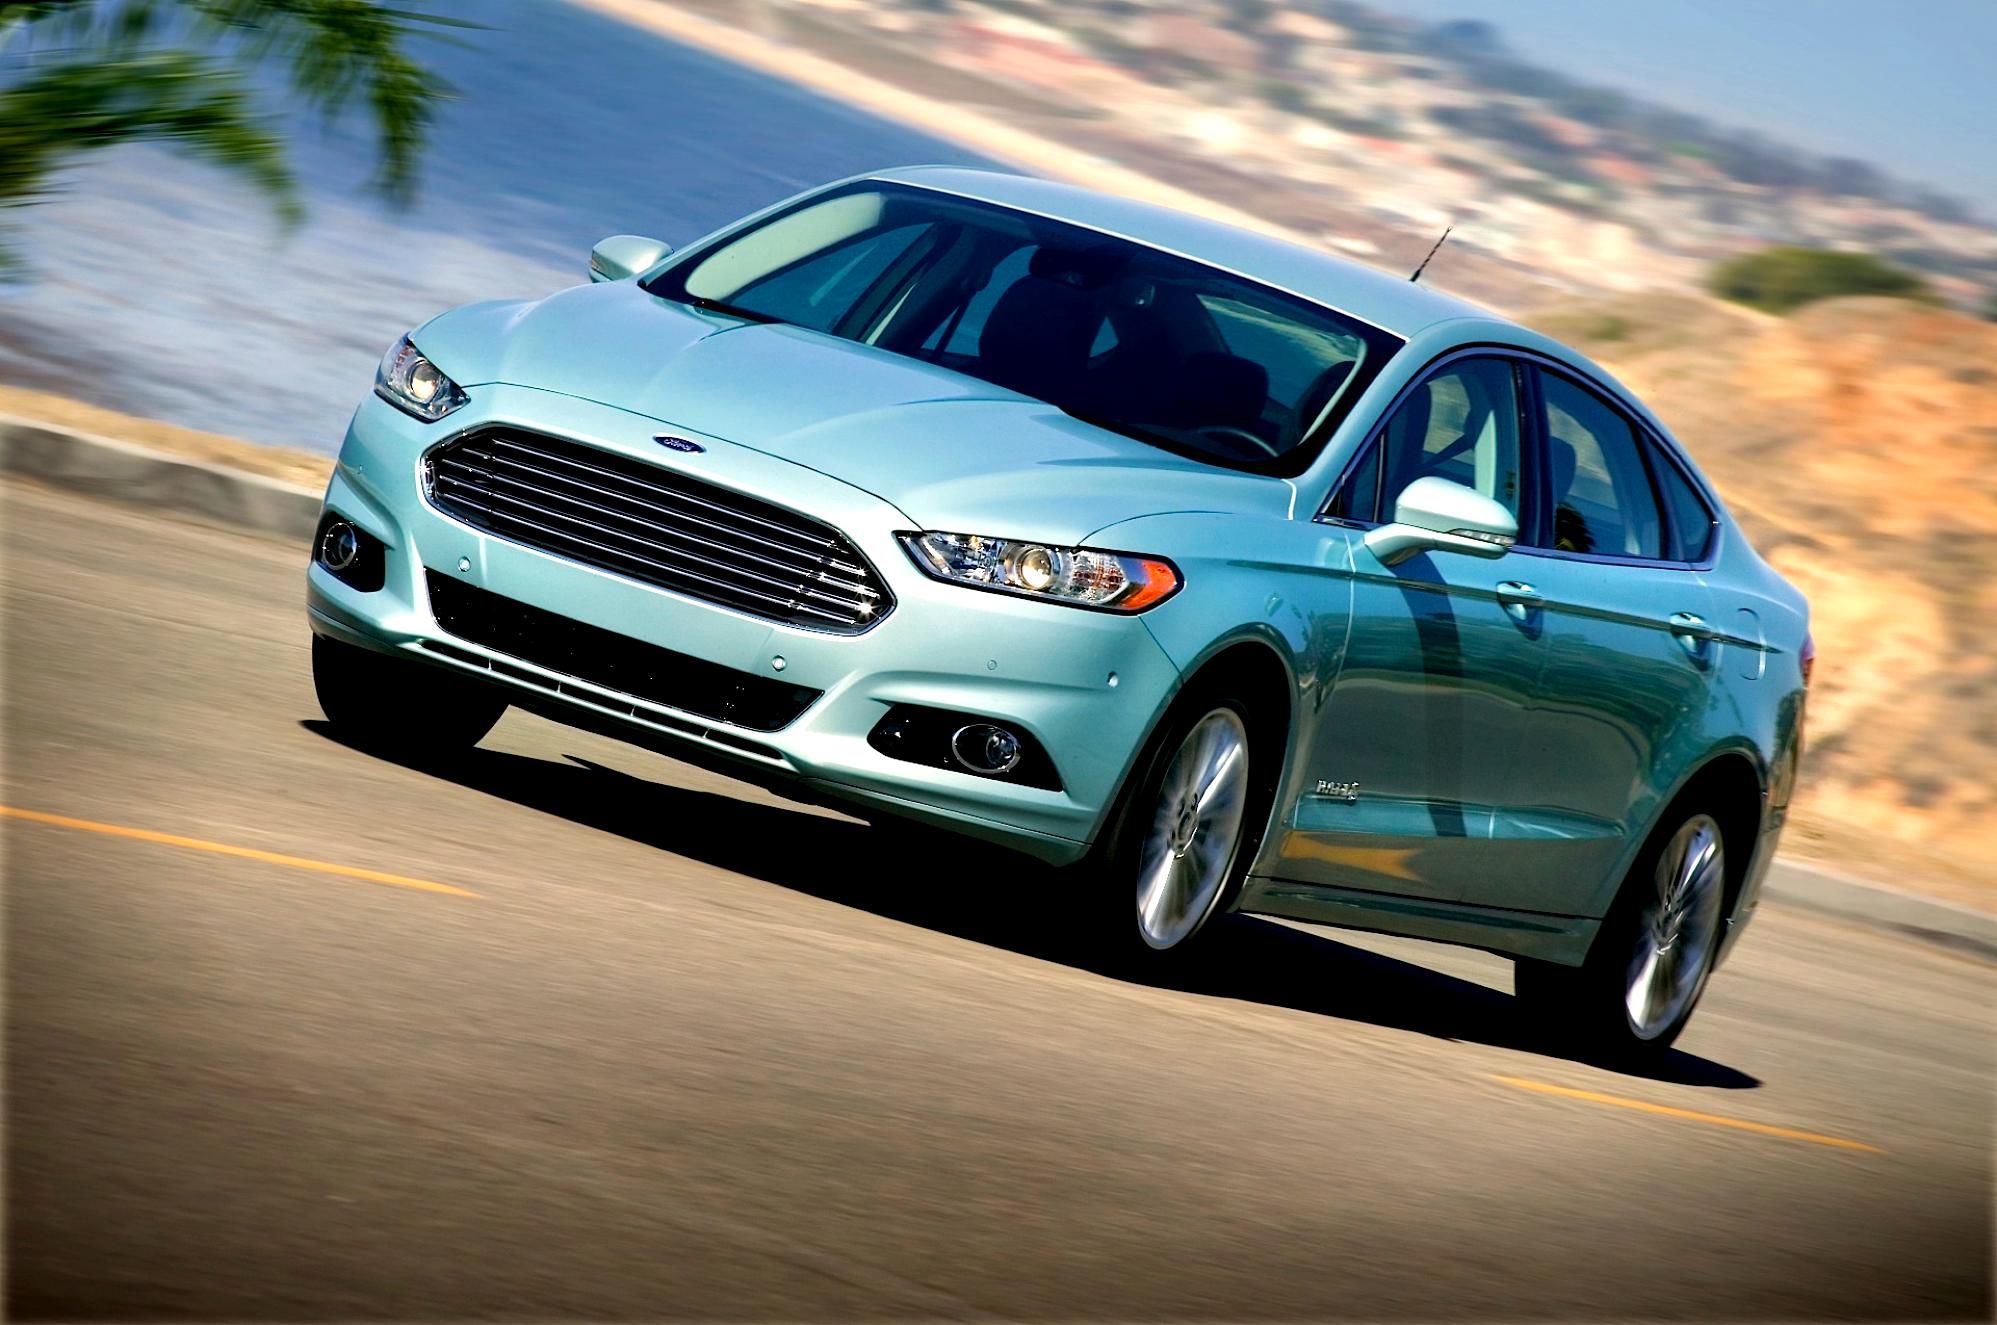 Ford Fusion Hybrid 2012 #17